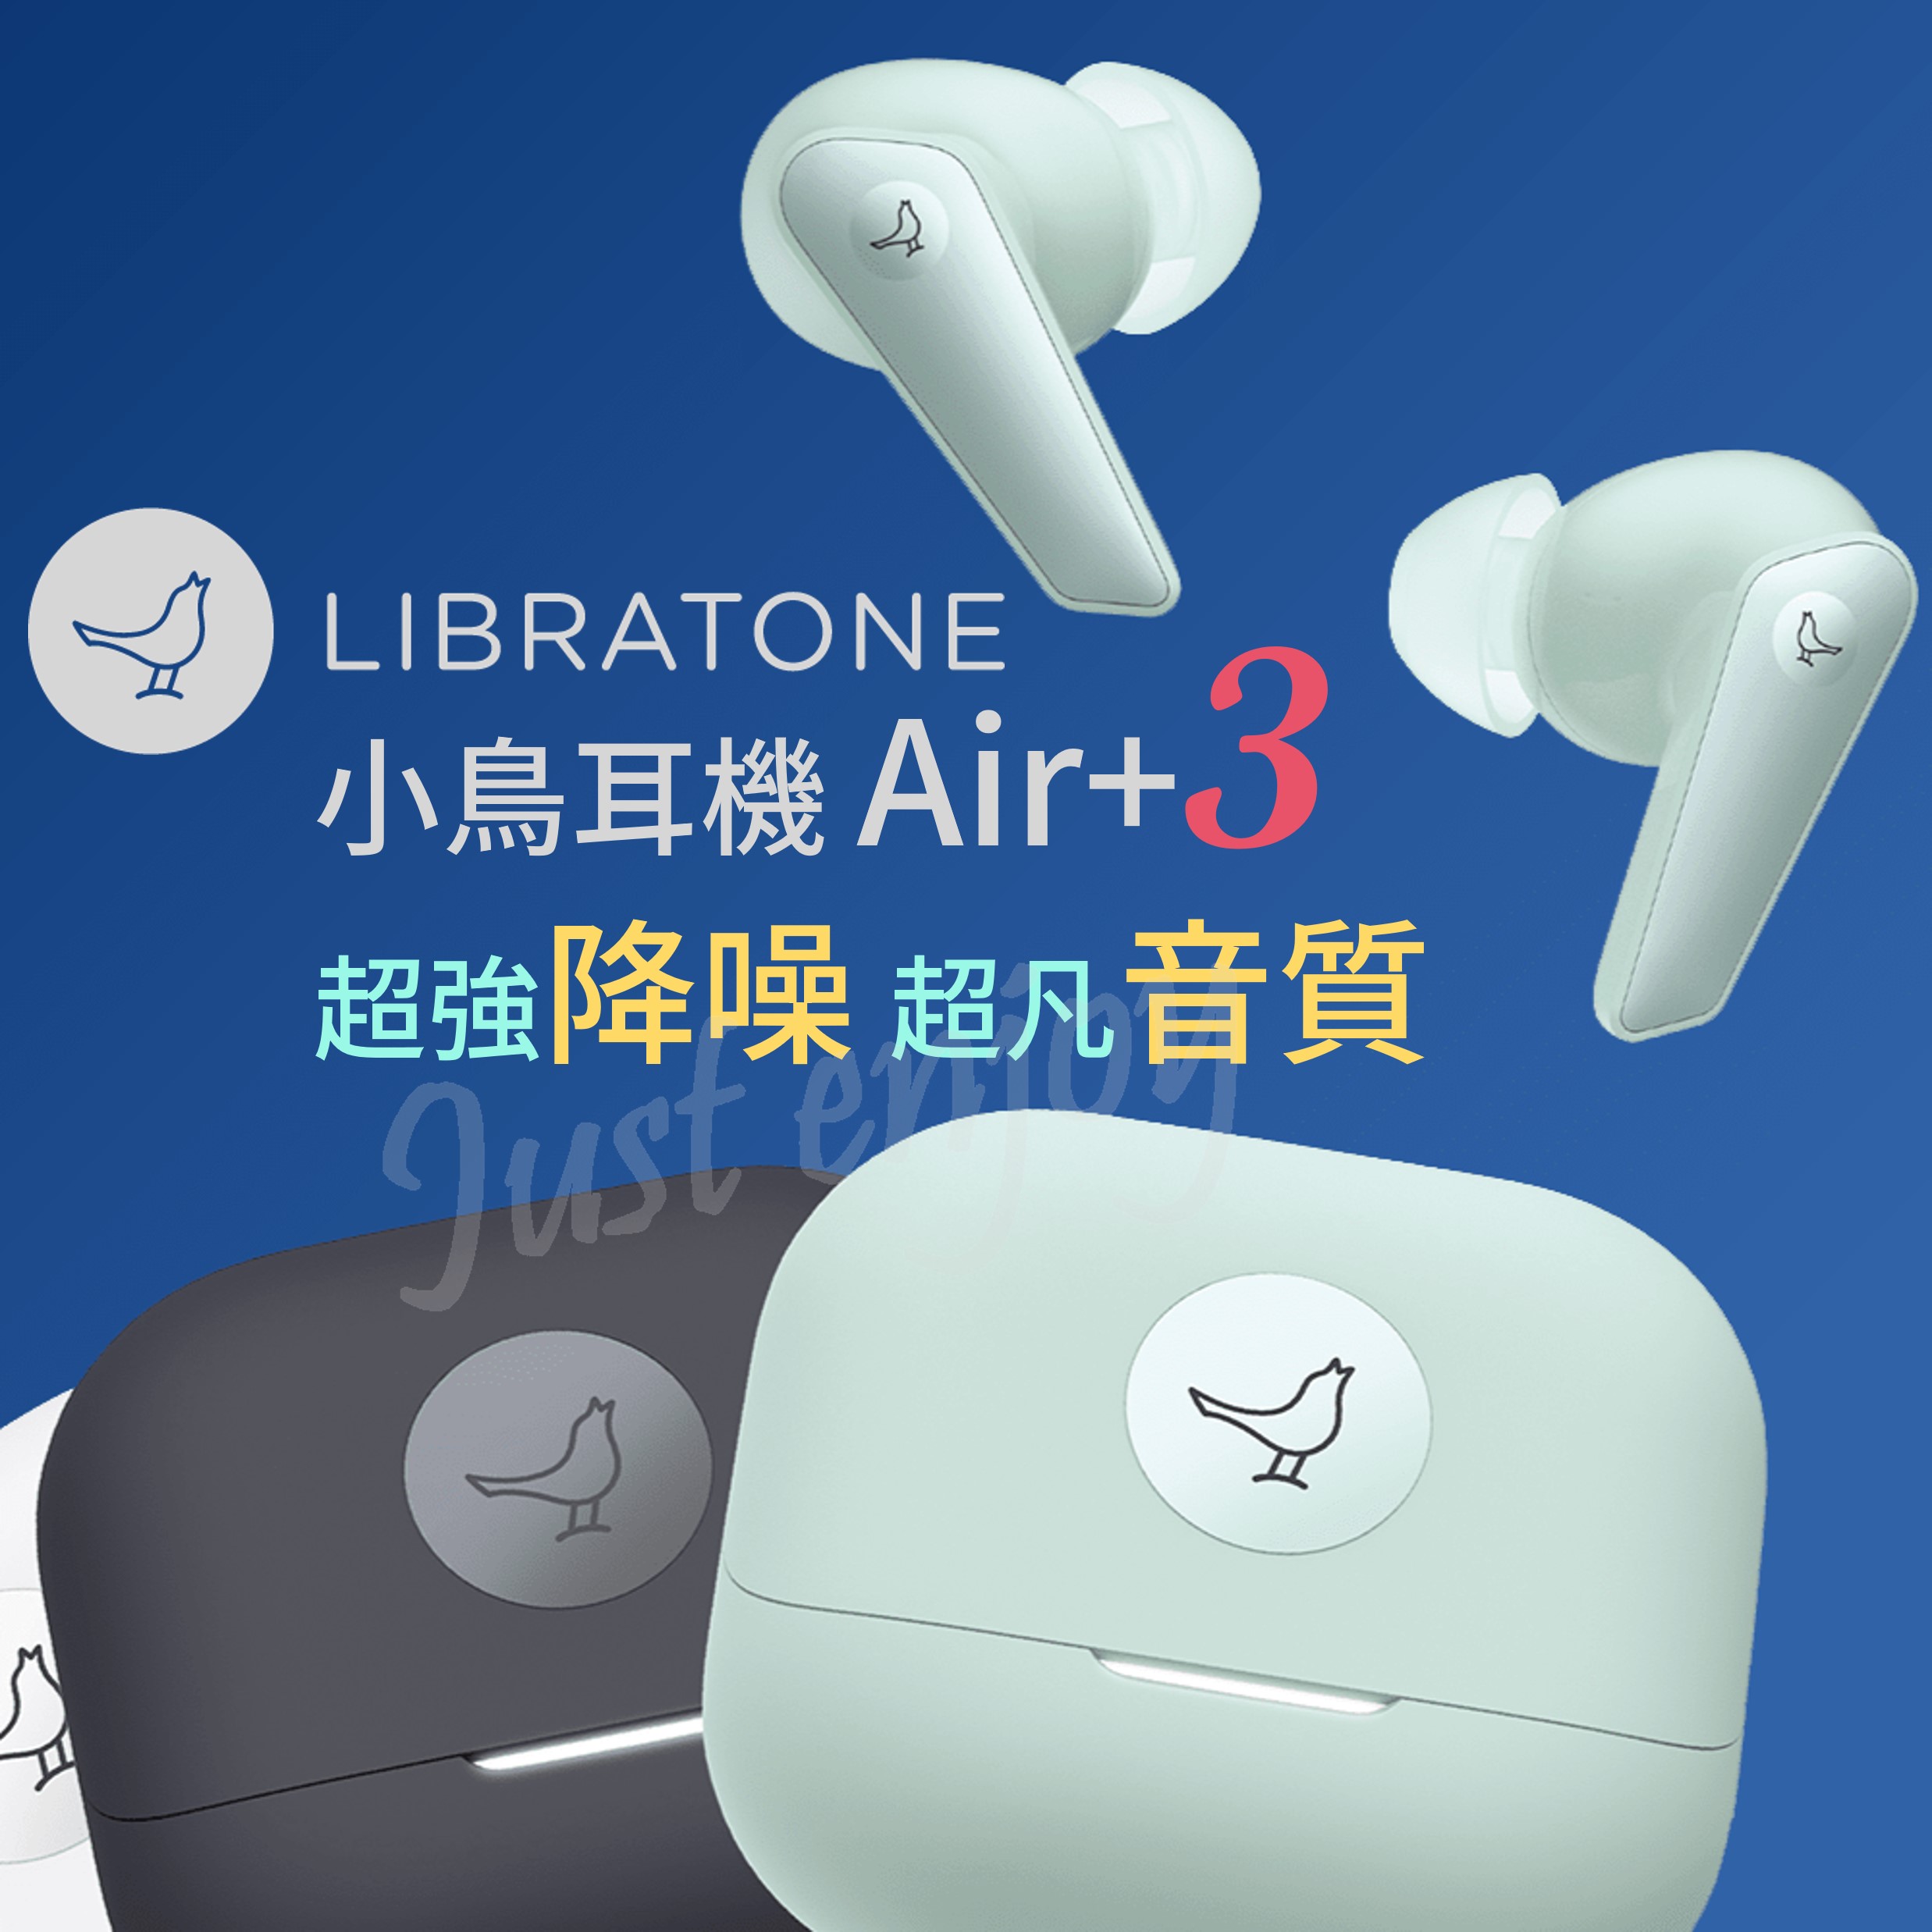 ⭐出清優惠🔥 Libratone 小鳥耳機 Air+3 超強降噪 IPX54 語音增強 運動模式 自定義抗噪模式